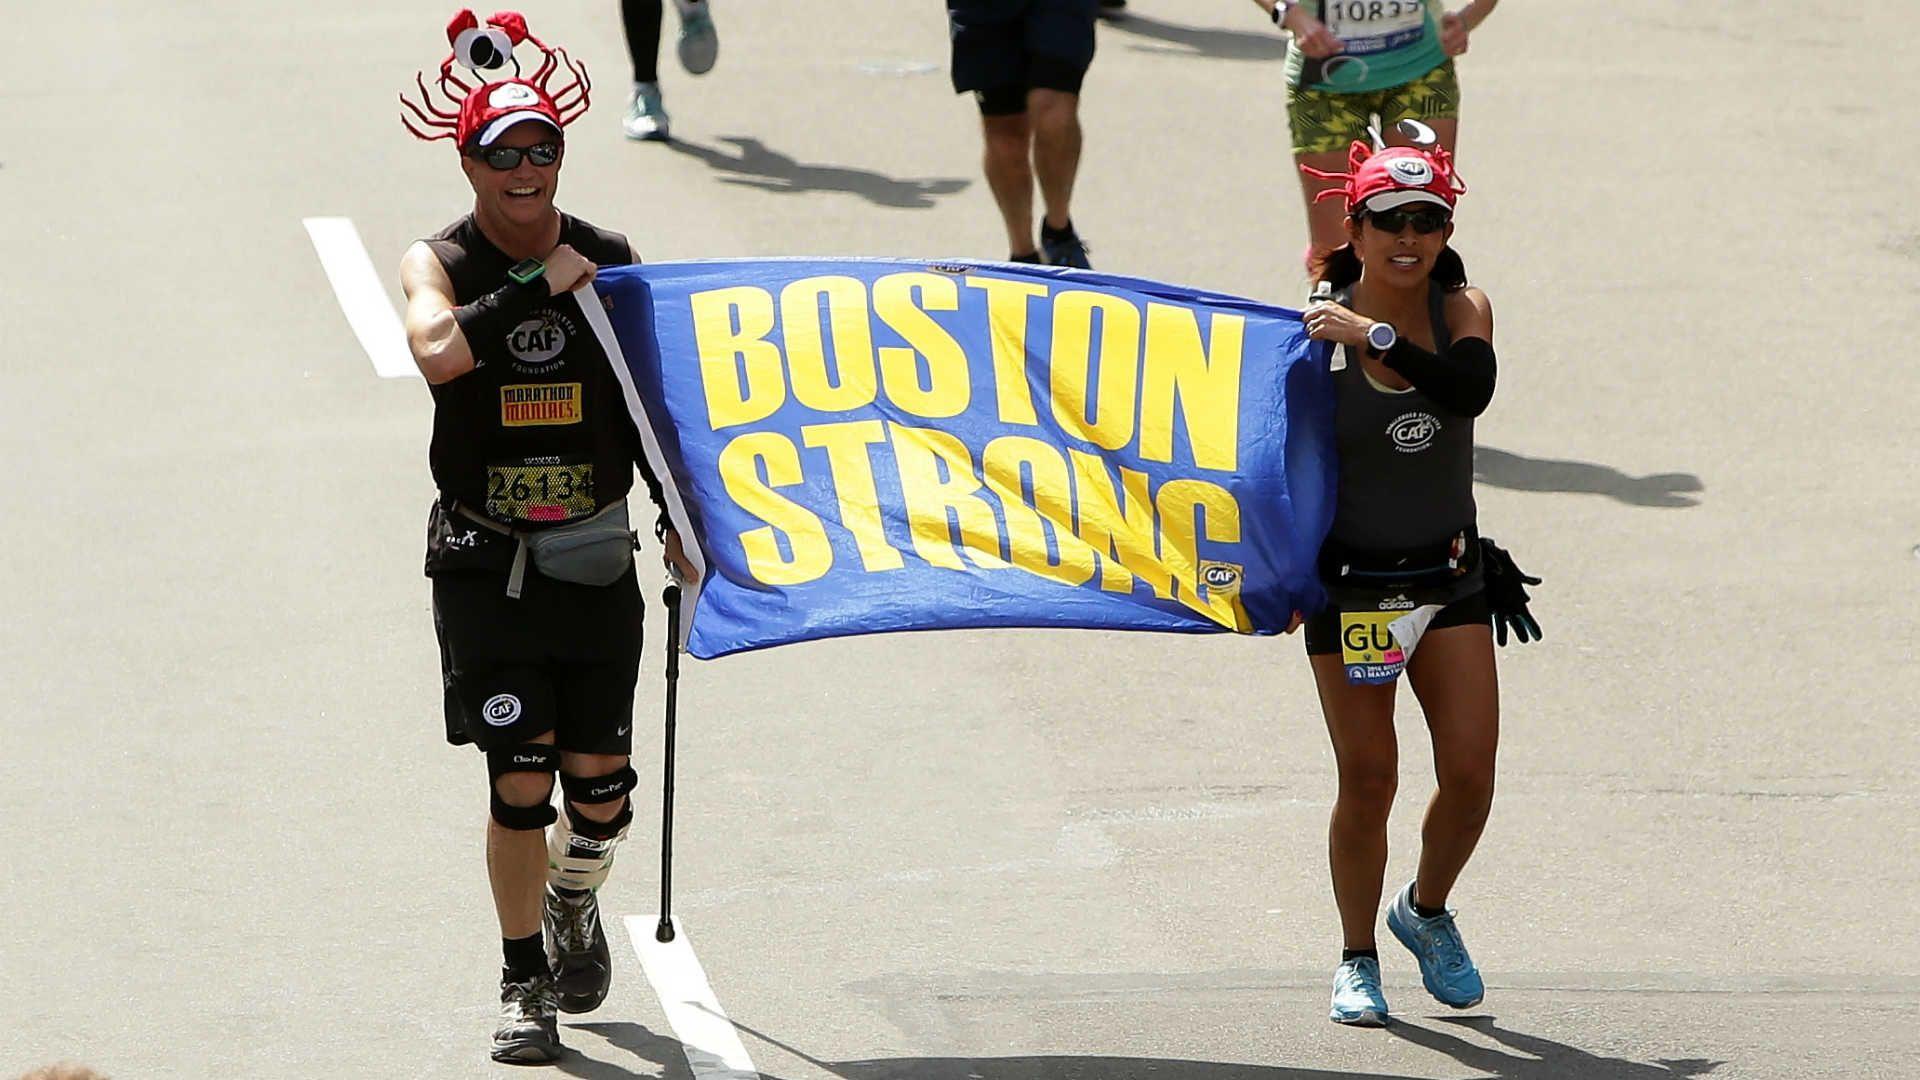 Boston Marathon 2017: Schedule, how to watch on Patriots Day